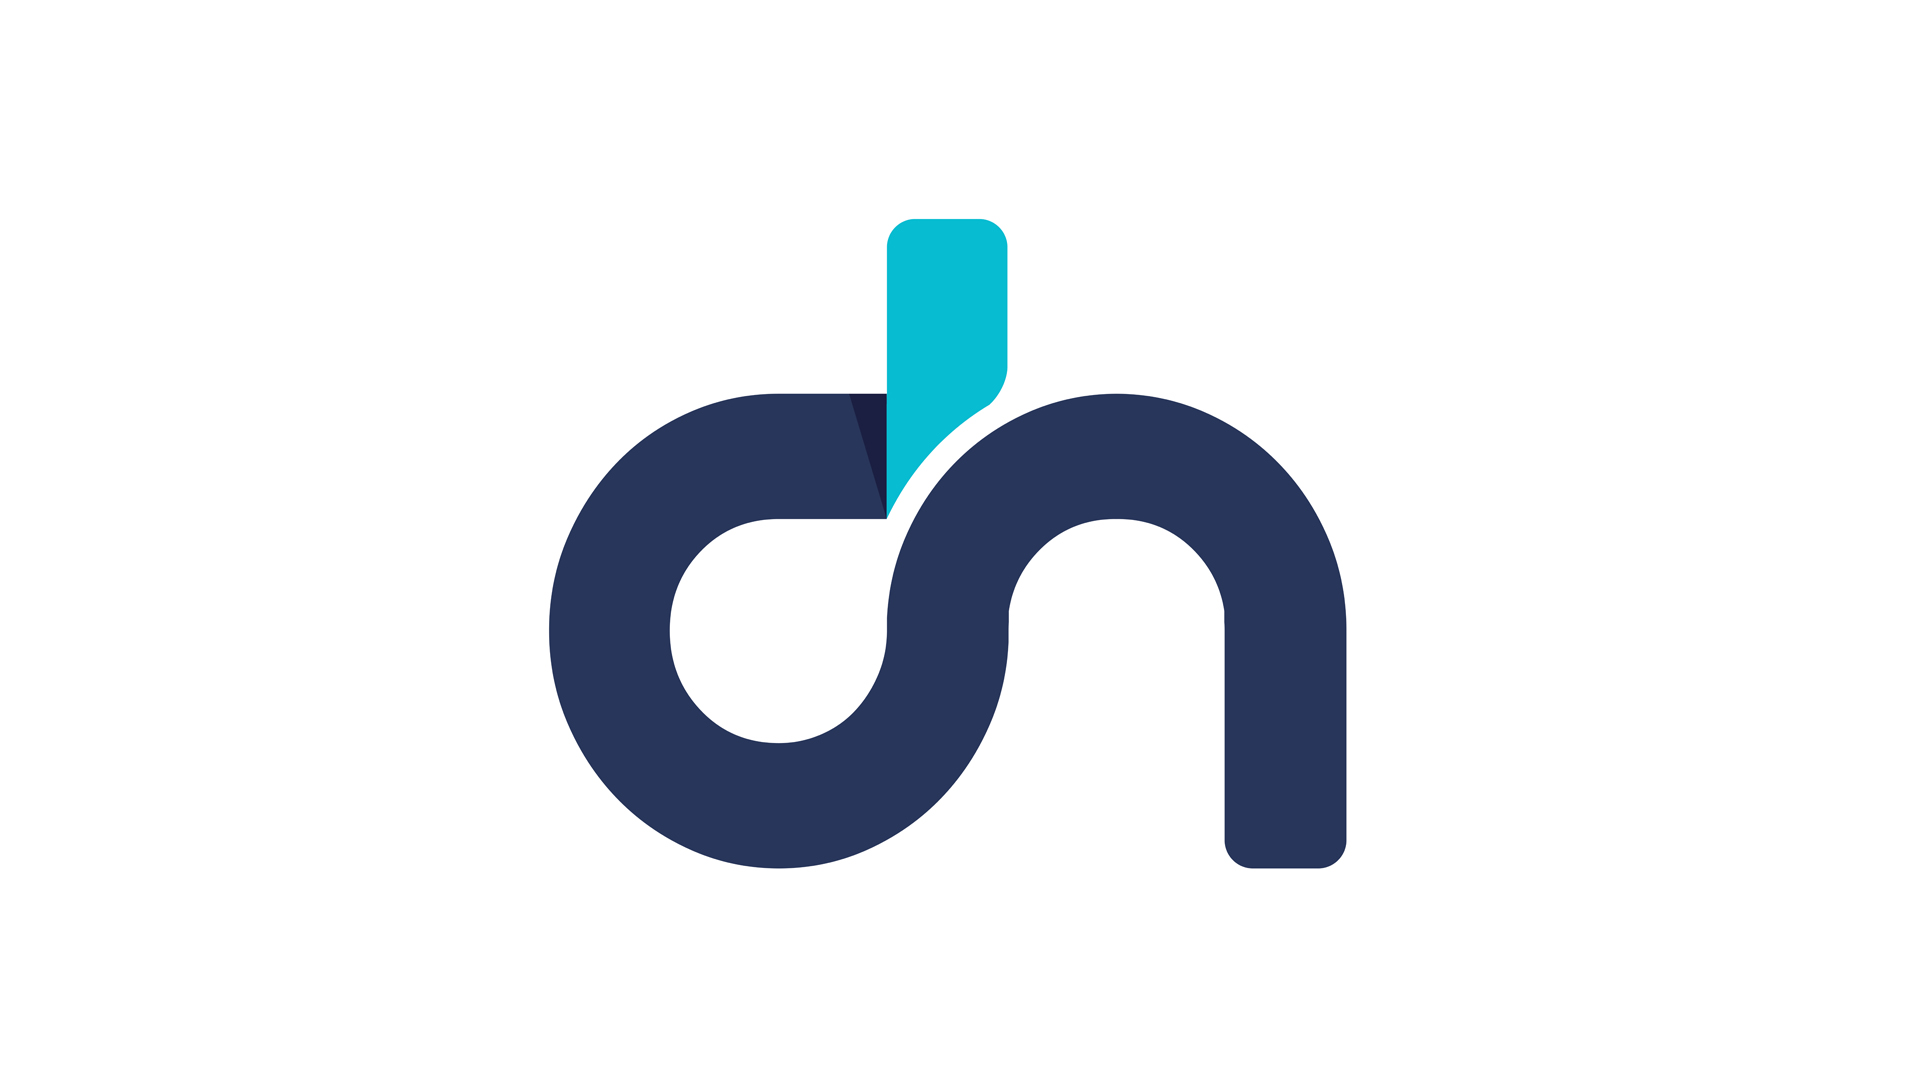 DH designed logo